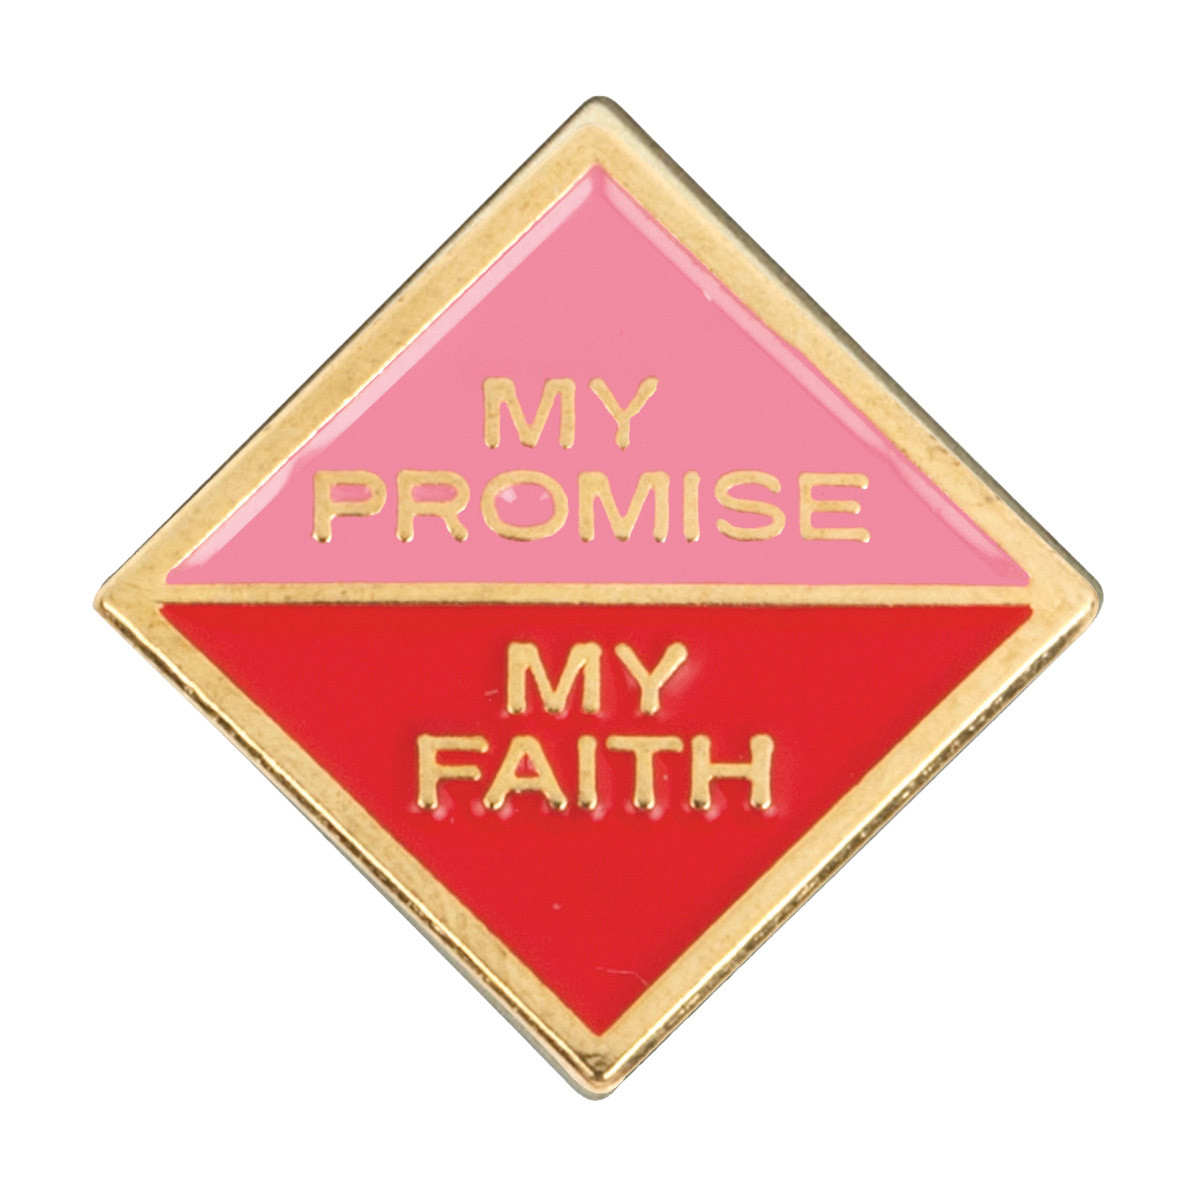 Cad. My Promise My Faith 1